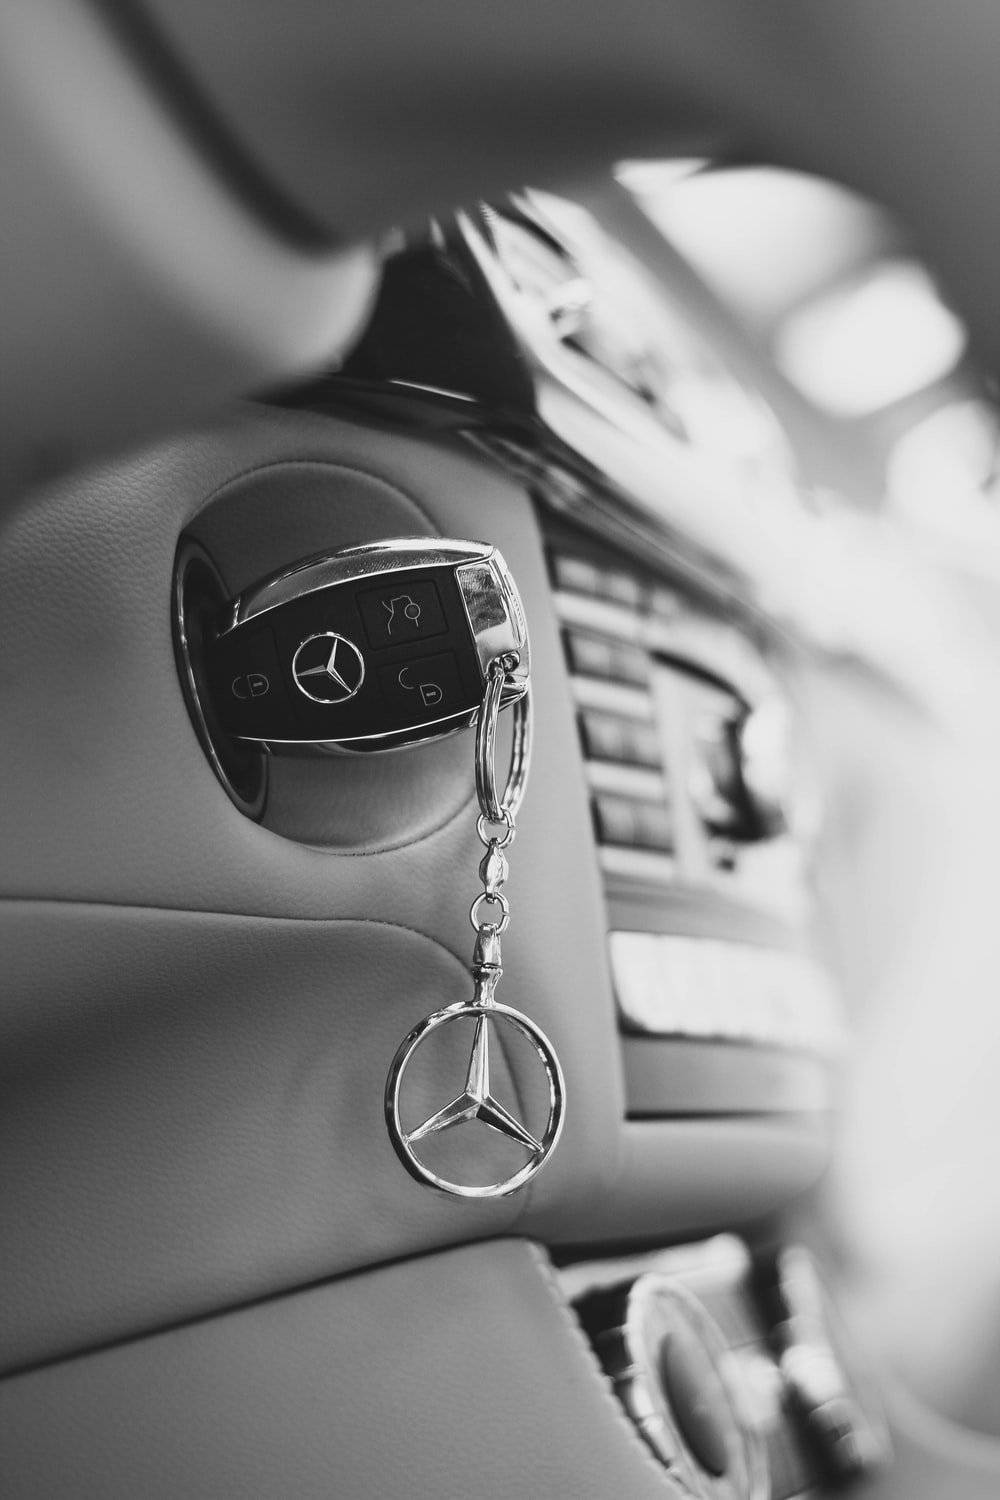 Llavede Coche Mercedes Benz En Blanco Y Negro Fondo de pantalla